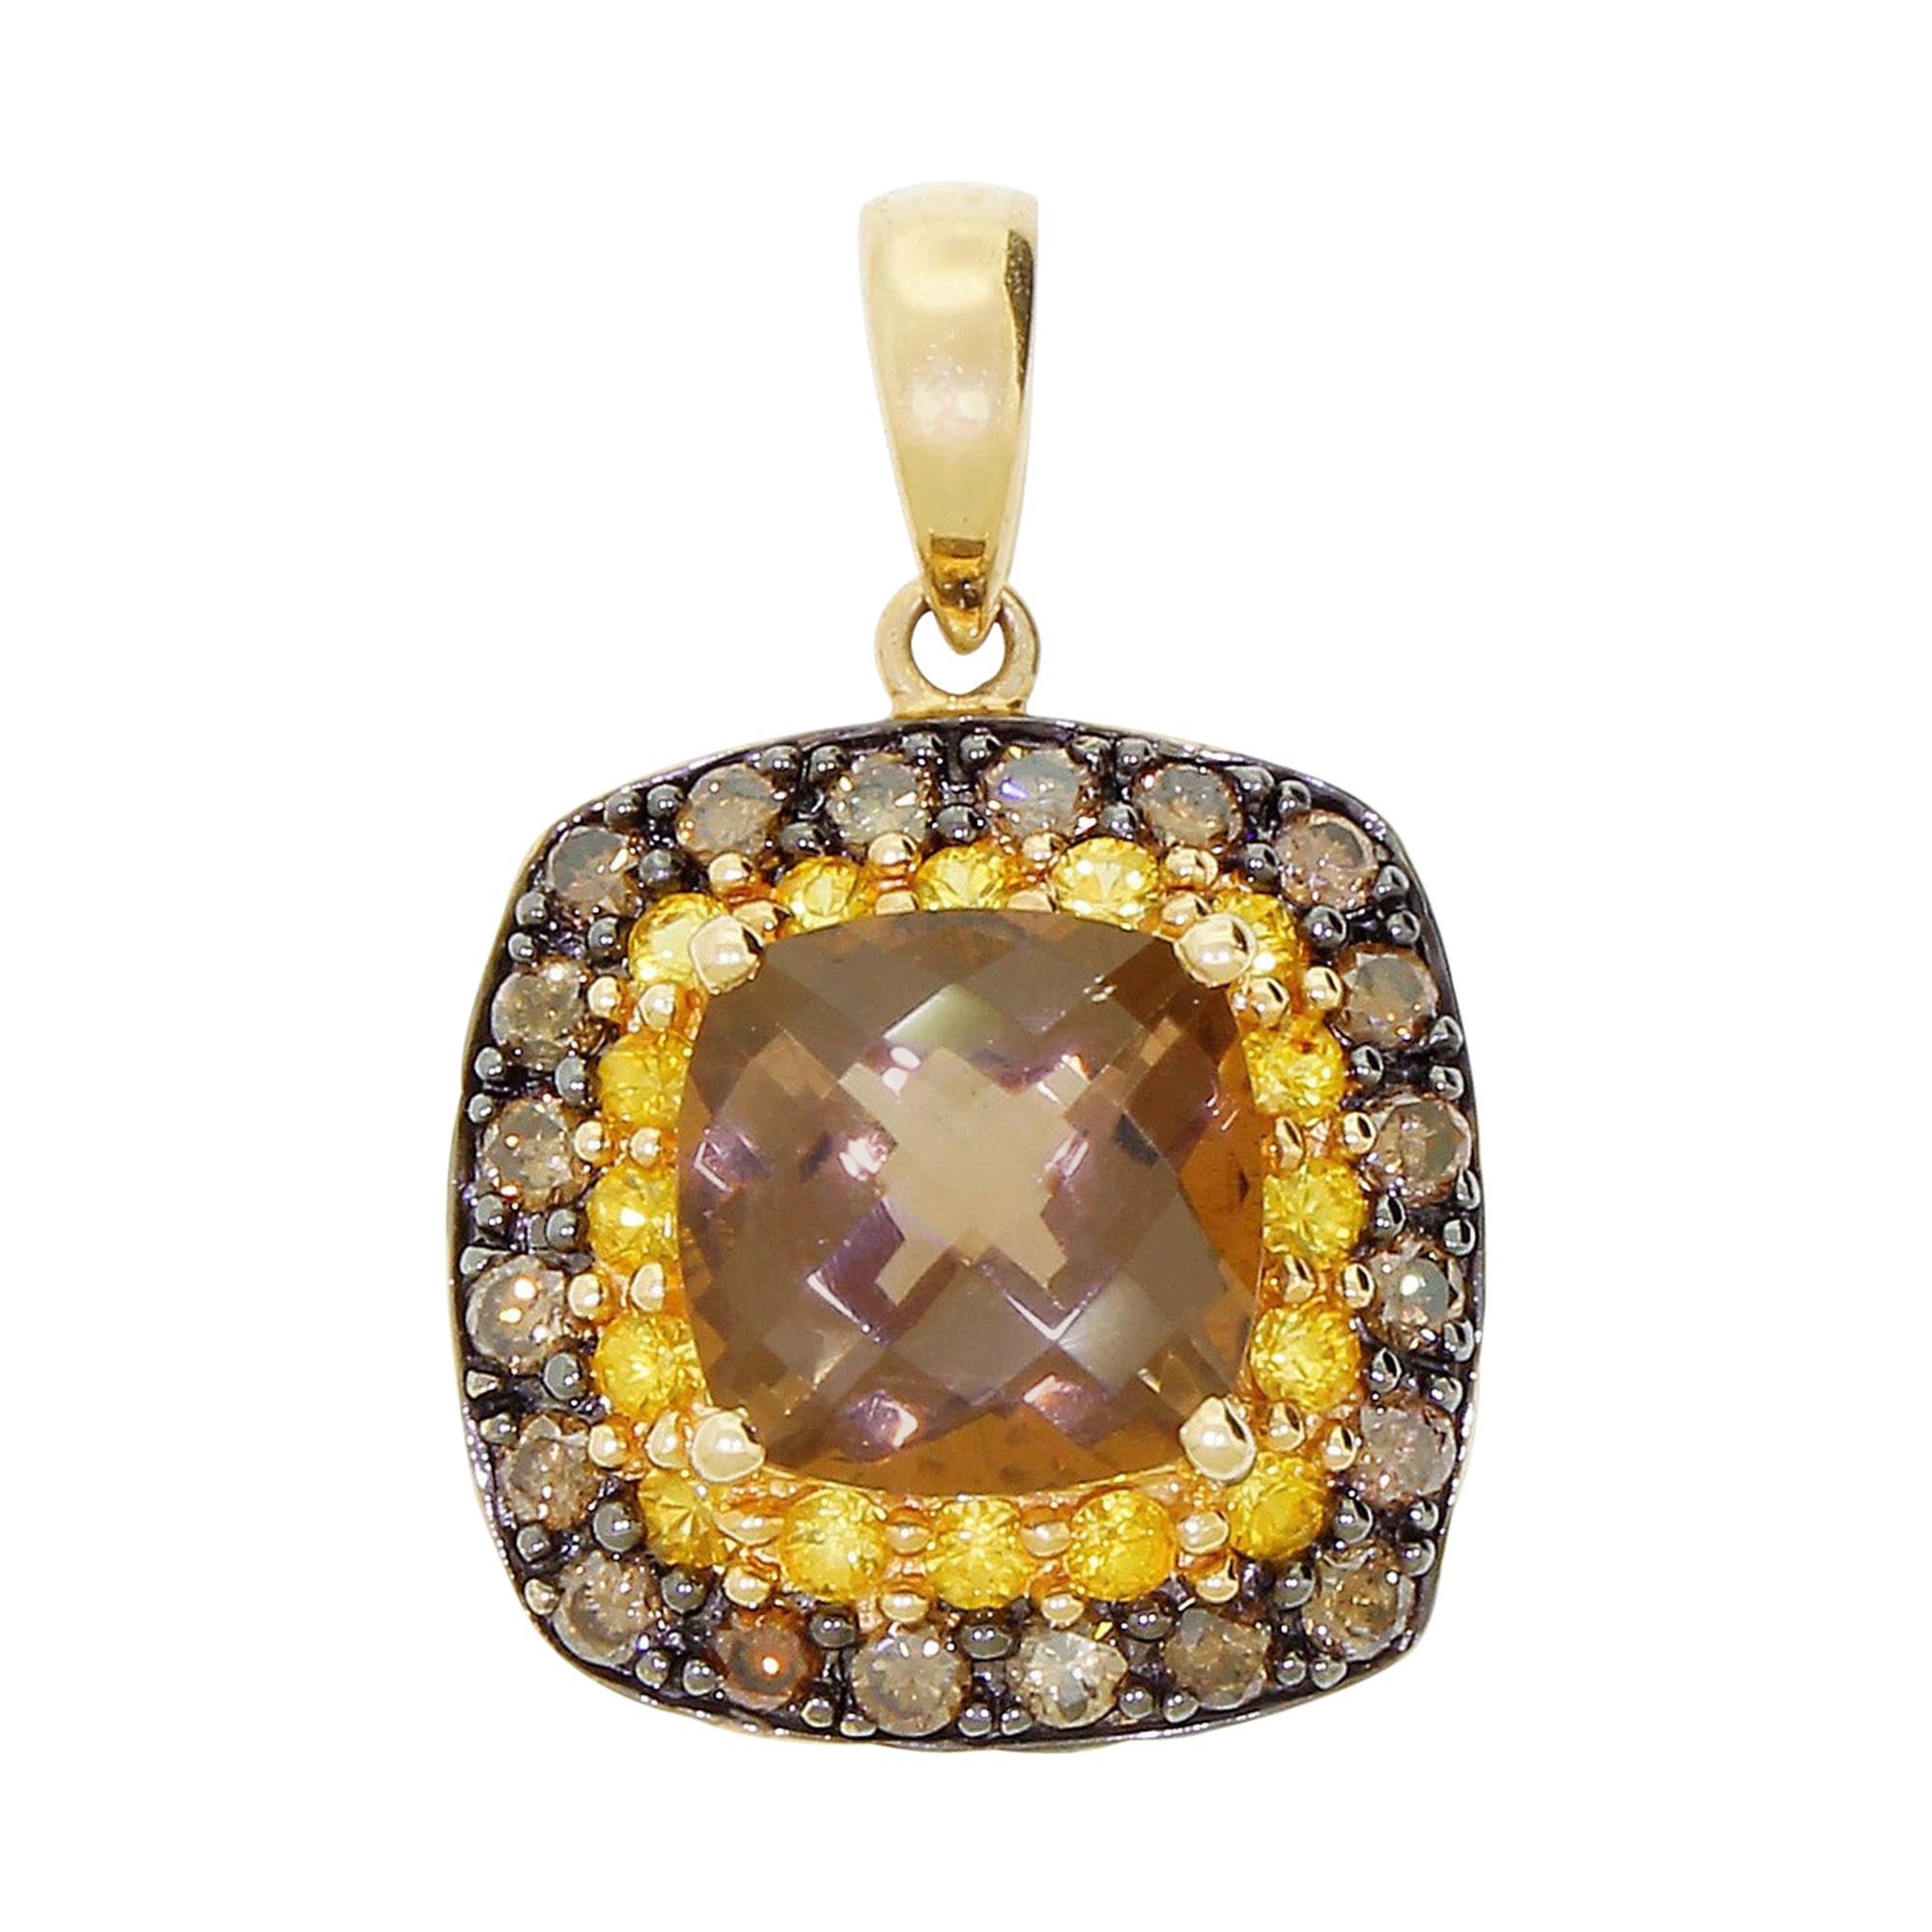 Effy BH 14 Karat Gold Pendant for Necklace Cognac Diamond Topaz and Smoky Quartz